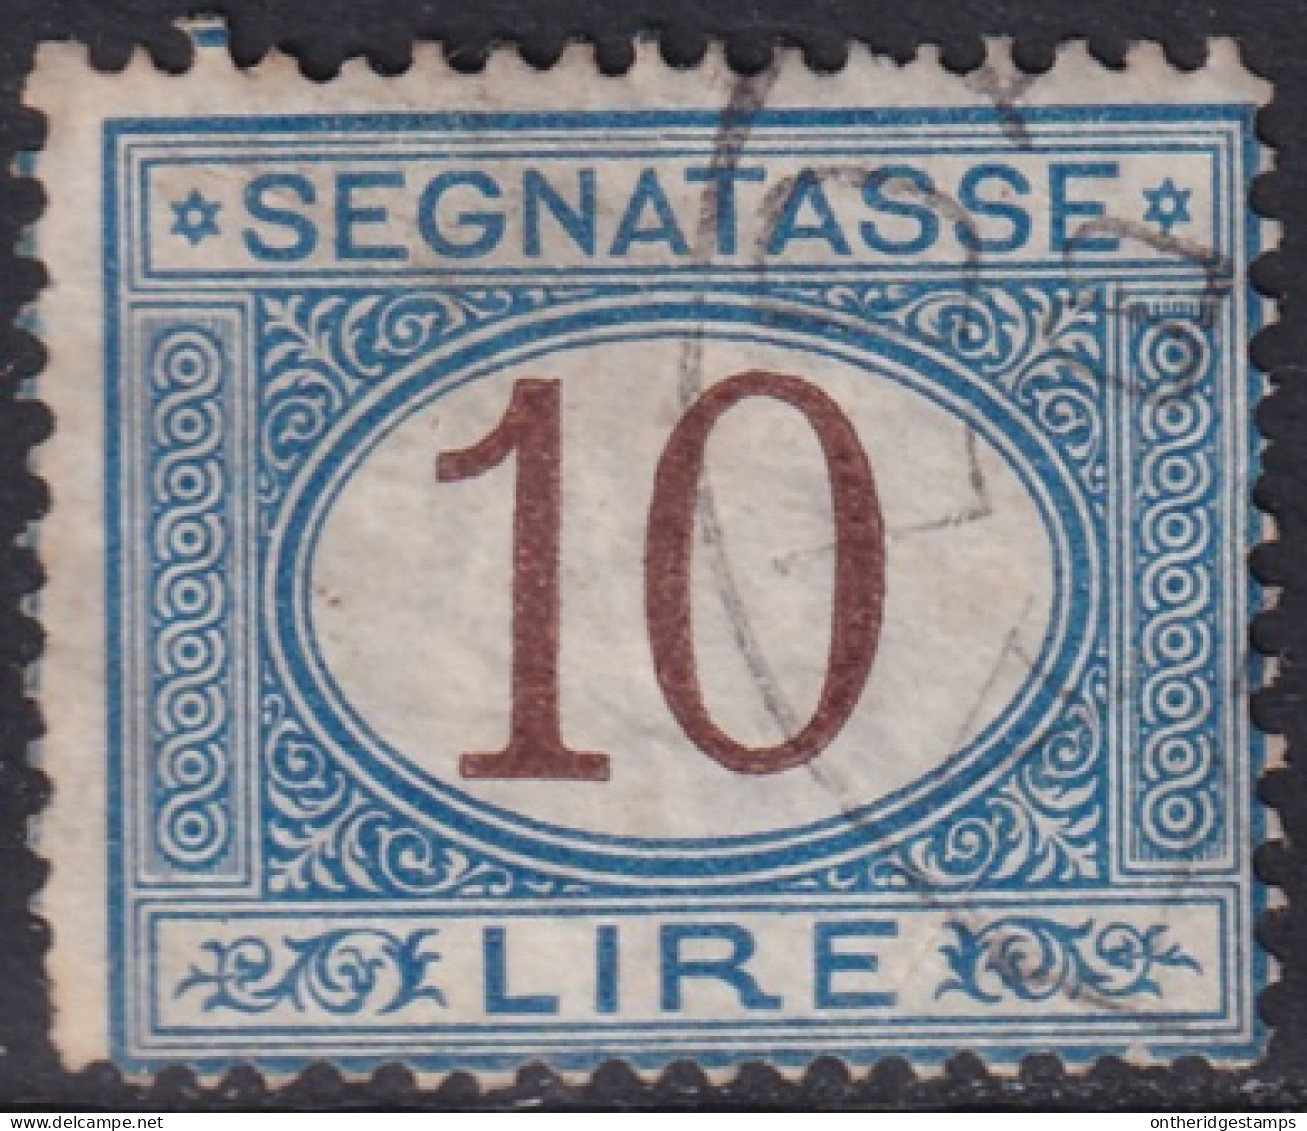 Italy 1874 Sc J19 Italia Sa S14 Postage Due Used Creases - Taxe